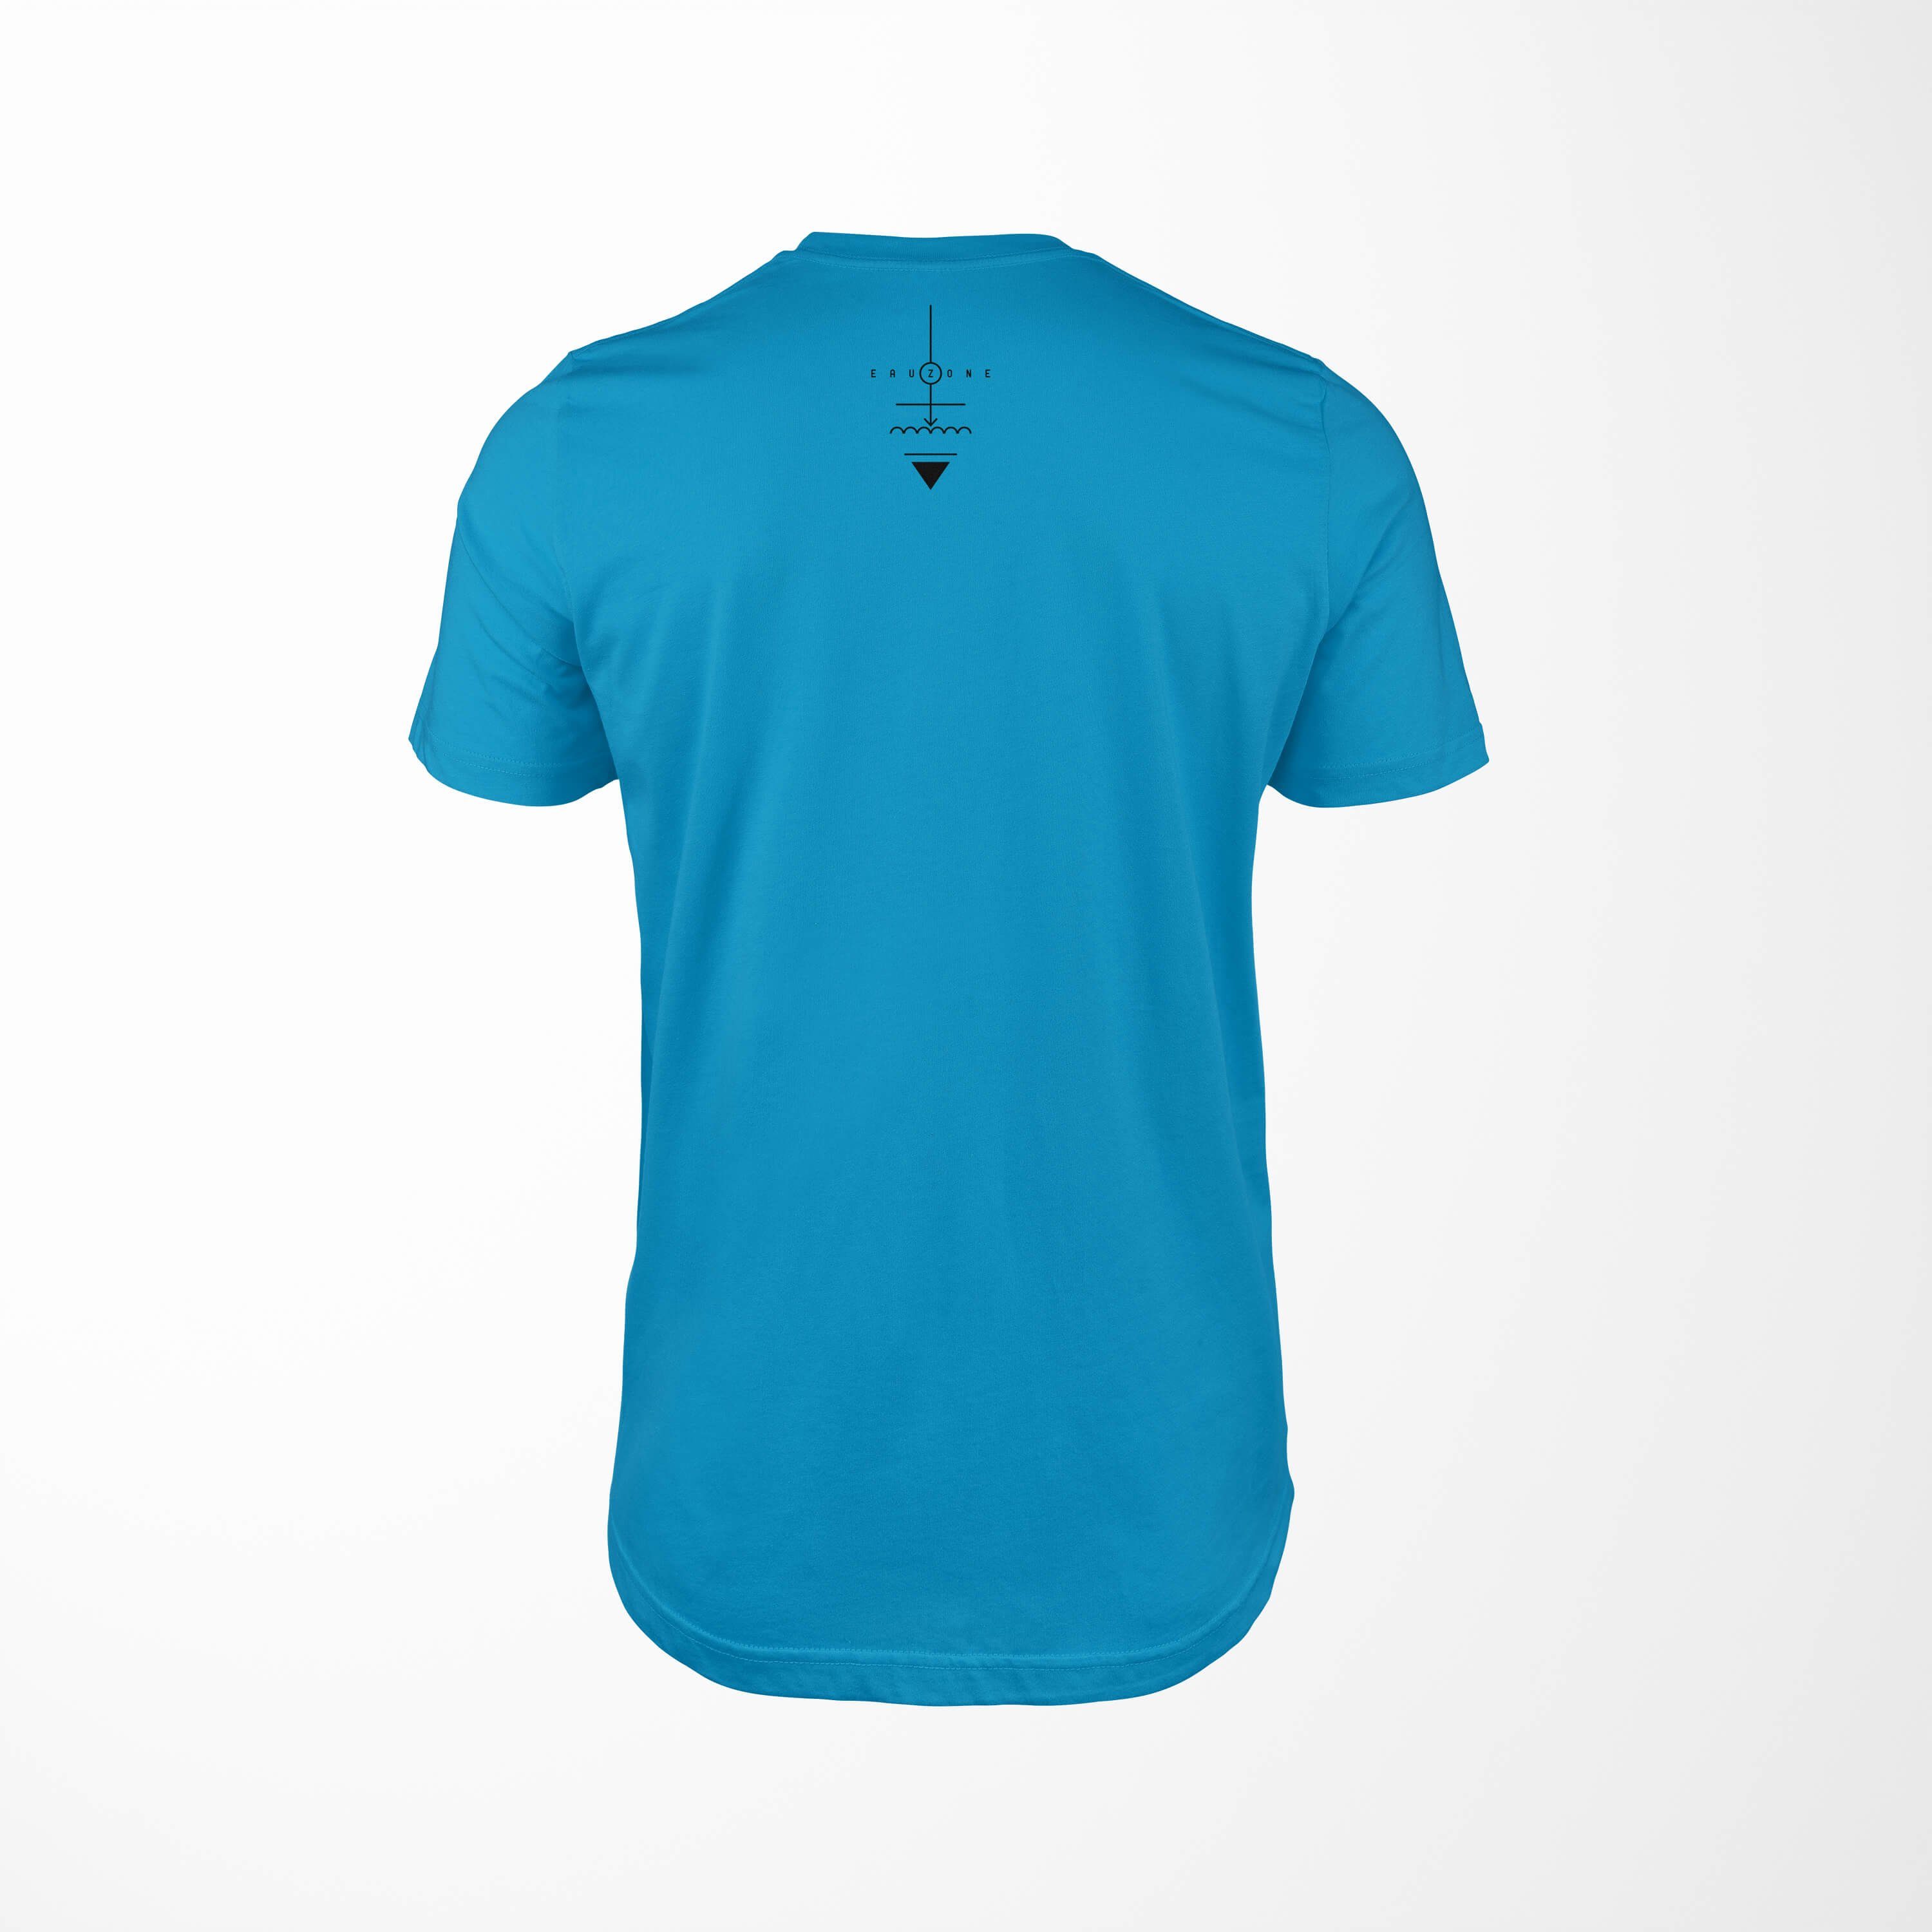 Sinus Art angenehmer feine T-Shirt Serie Symbole No.0001 Tragekomfort Premium T-Shirt Alchemy Struktur Atoll